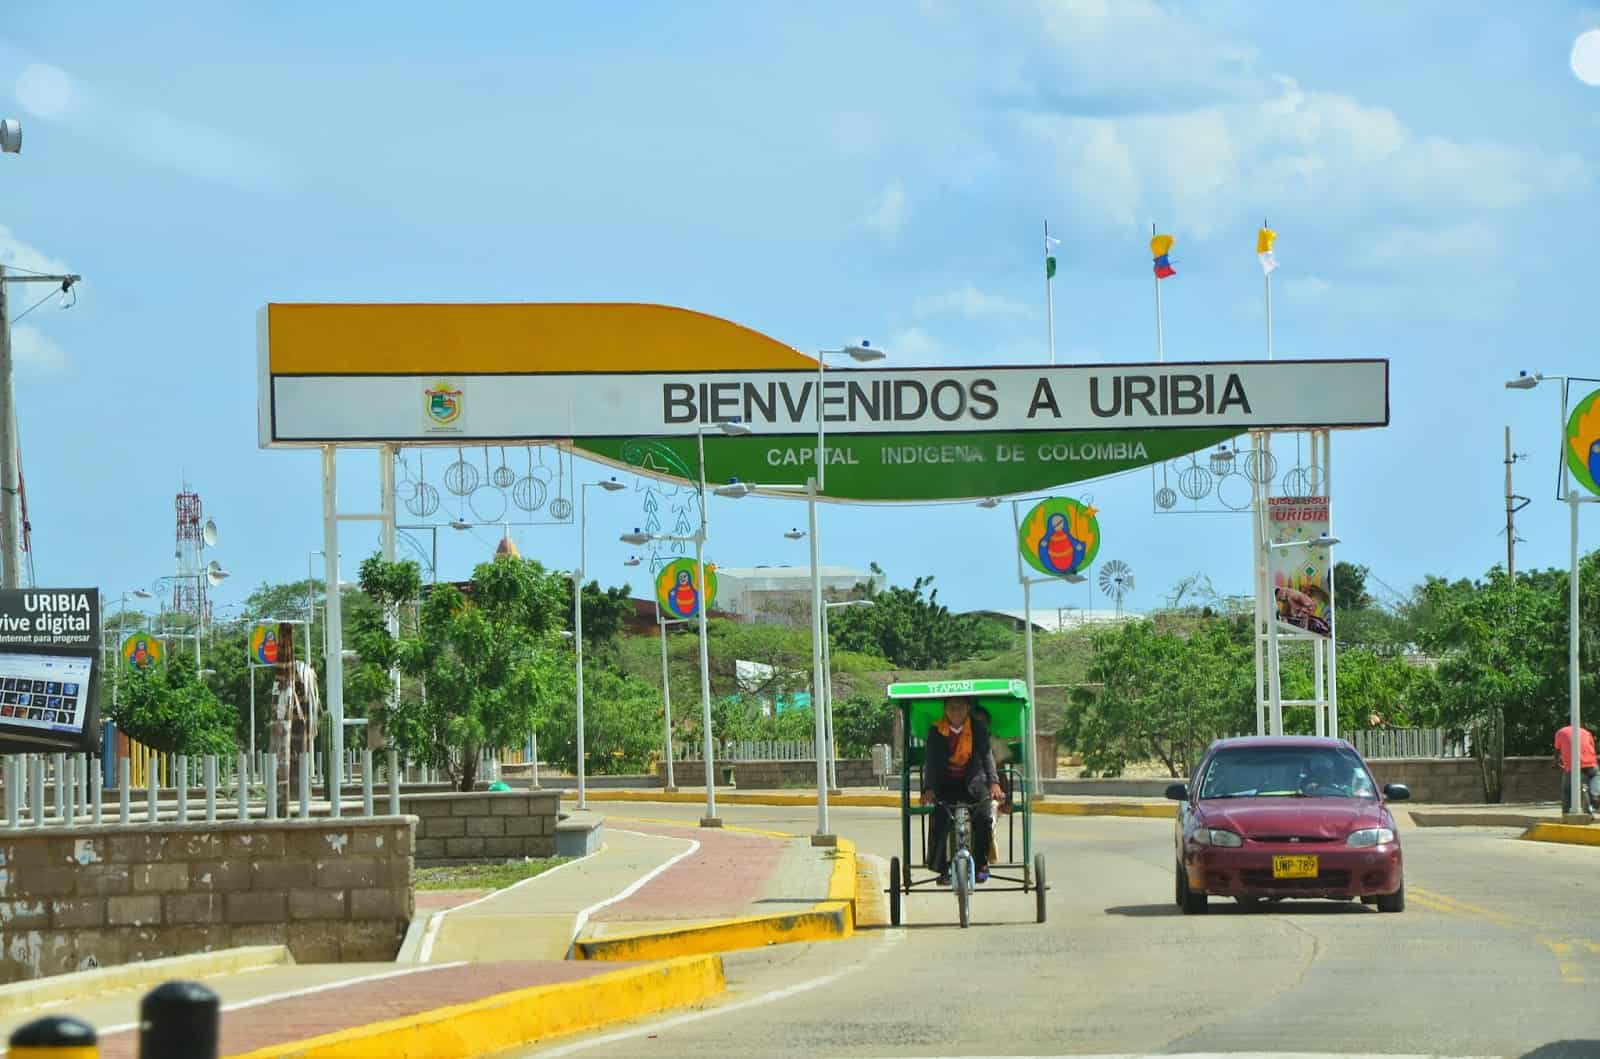 Uribia, La Guajira, Colombia